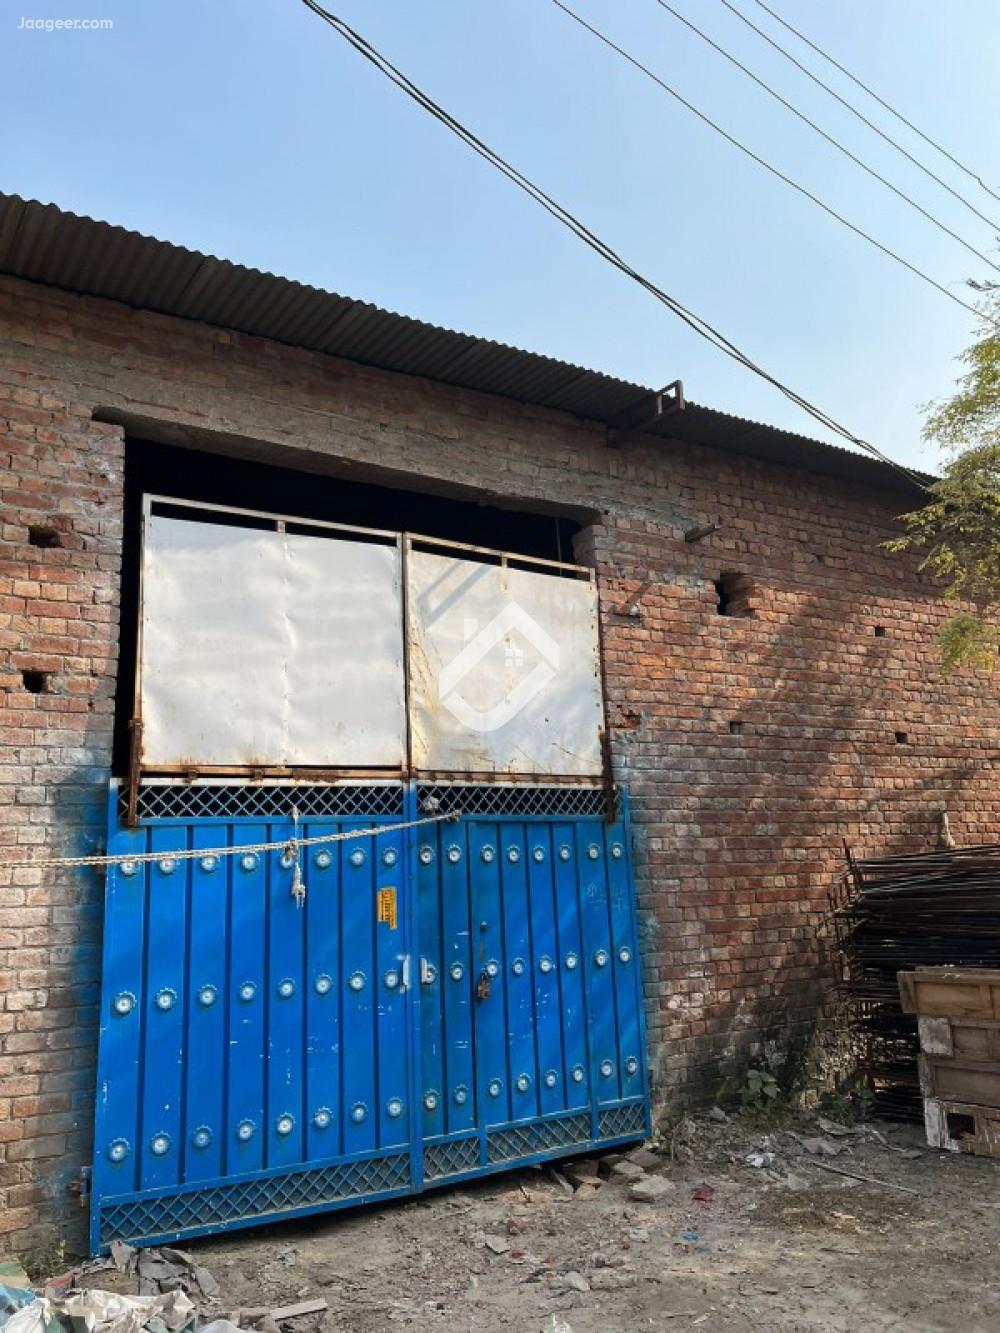 12 Marla Commercial Warehouse For Sale In Bilal Ganj Daroghwala Bilal Ganj Machinery Wara Gujran G.T Road in Bilal Ganj, Lahore